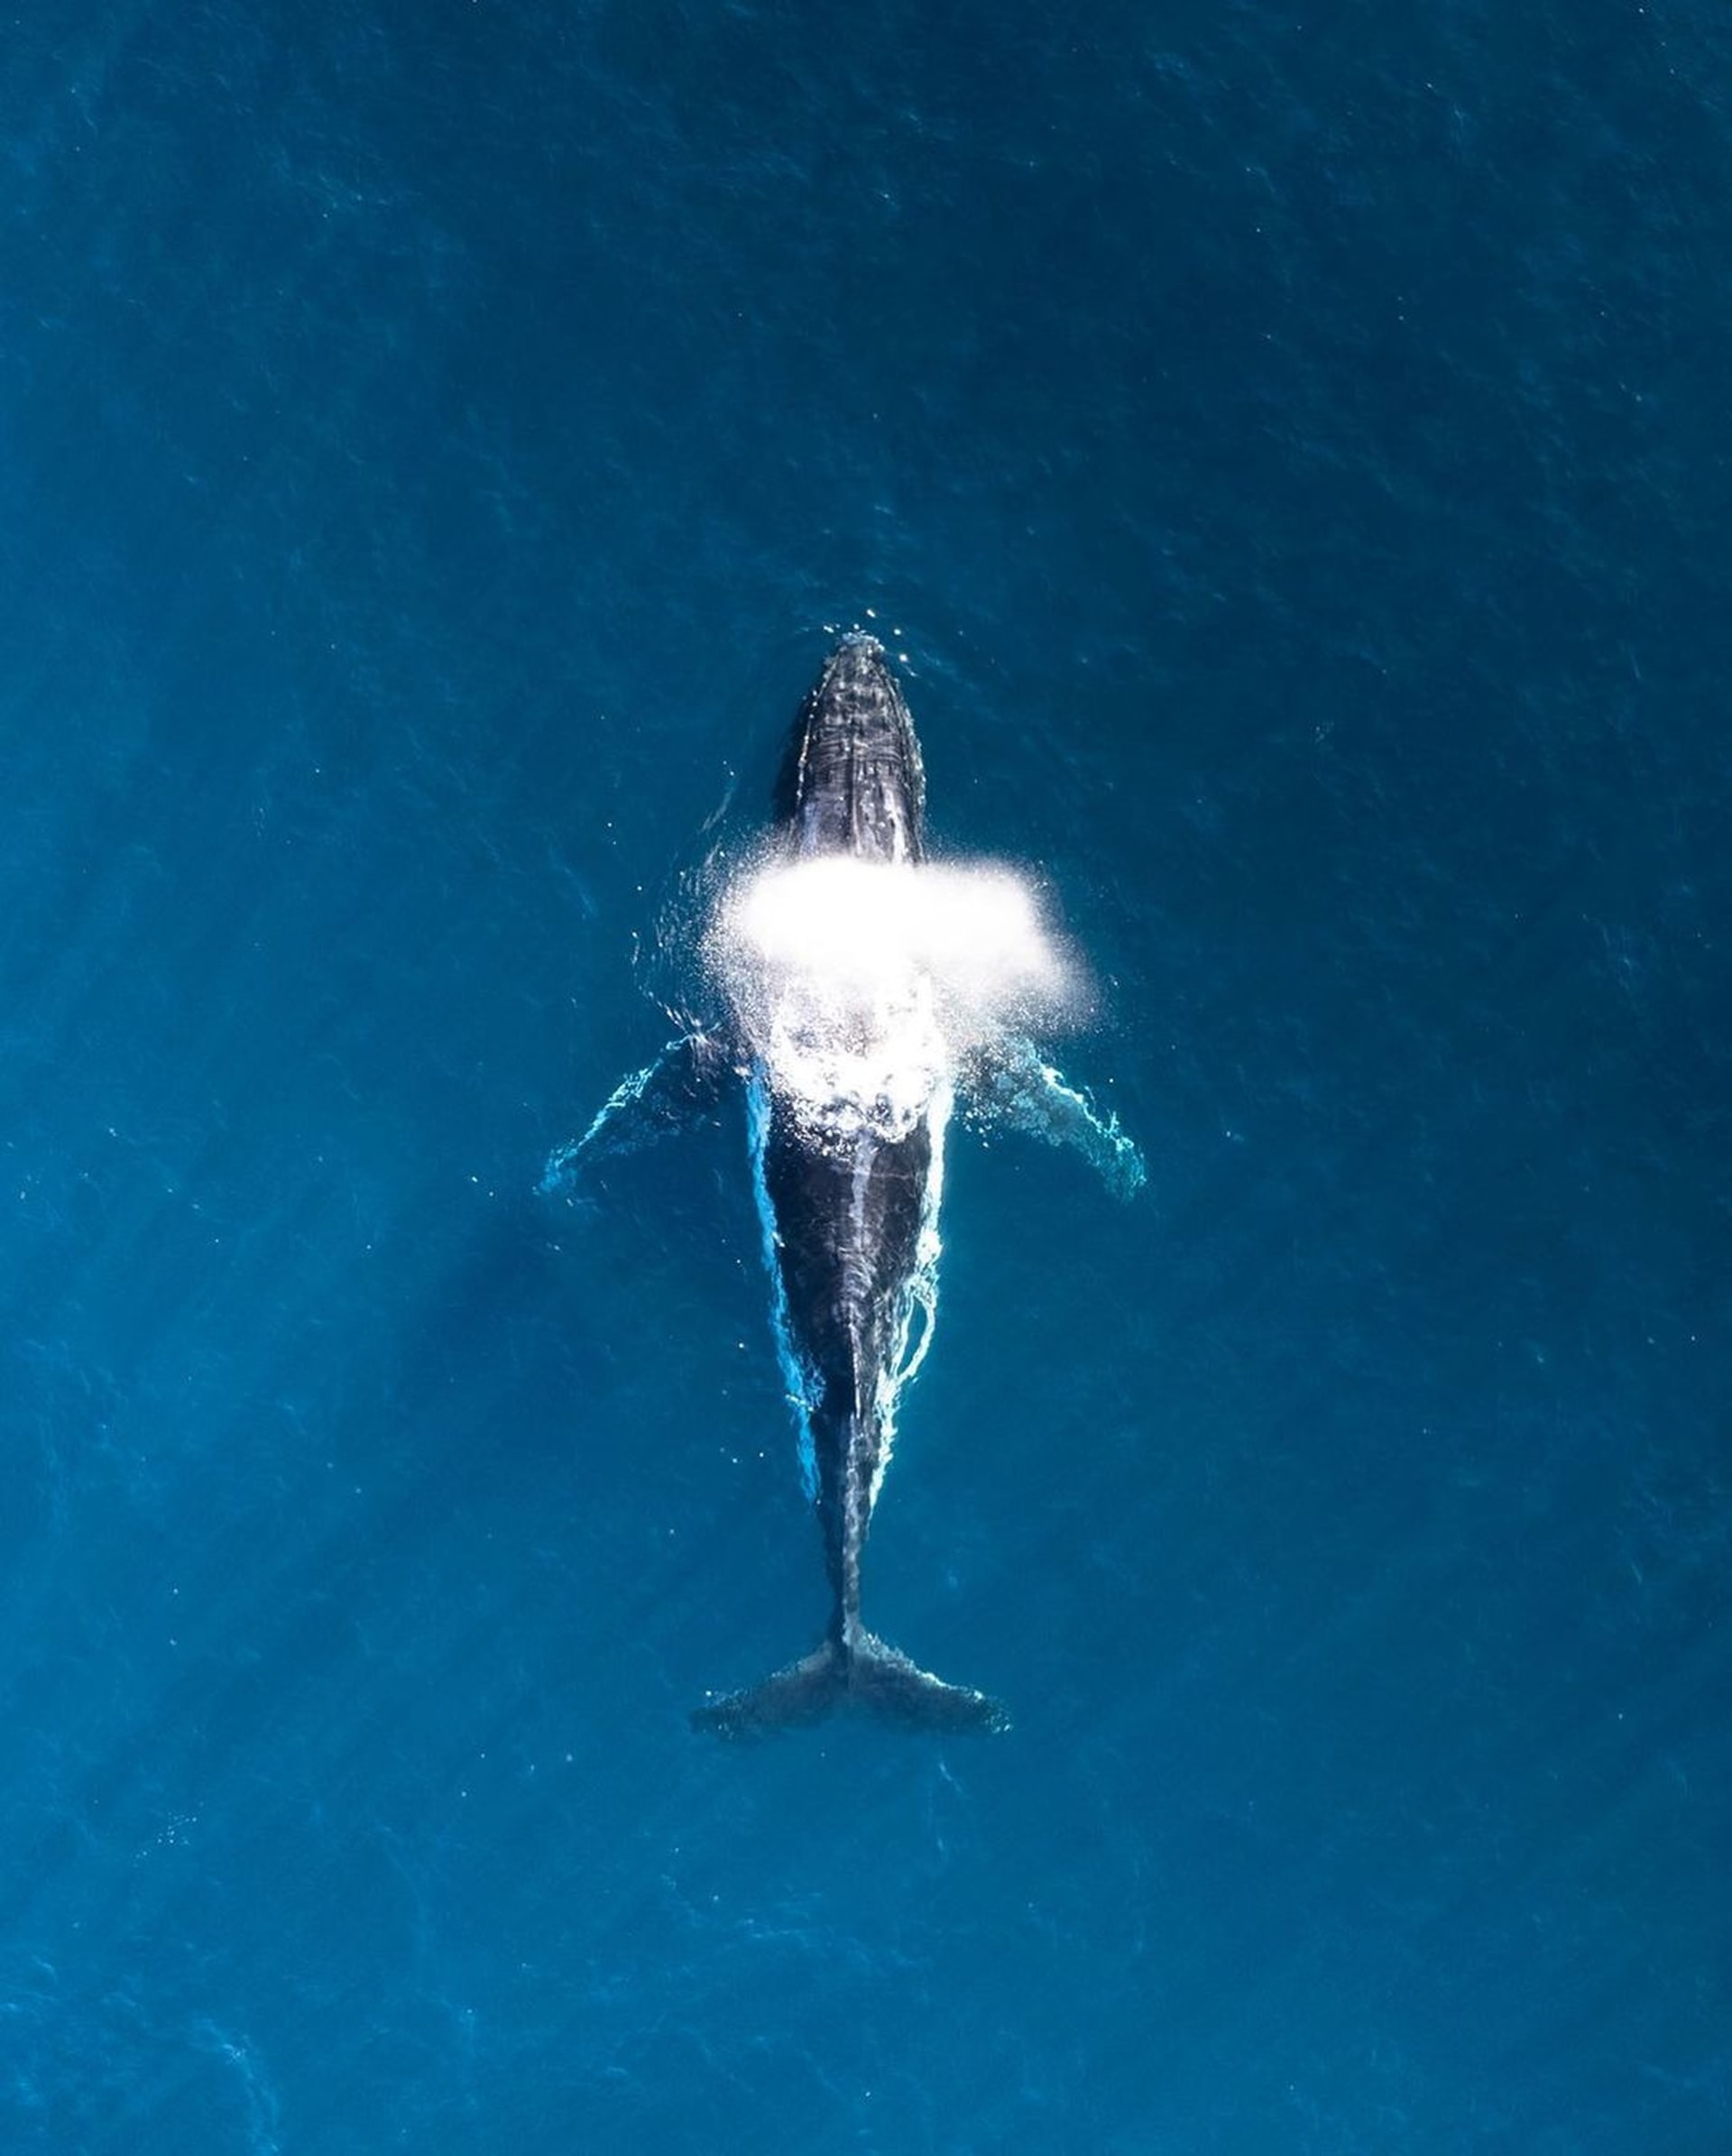 De meeste deskundigen zijn het erover eens dat de blauwe vinvis het grootste dier is dat ooit op aarde heeft geleefd... ze zeggen zelfs dat hij het luidst is. De dwerg potvis is slechts 2.4 meter lang en is de kleinste walvis. De gemiddelde walvis kan wel 32 meter lang worden.